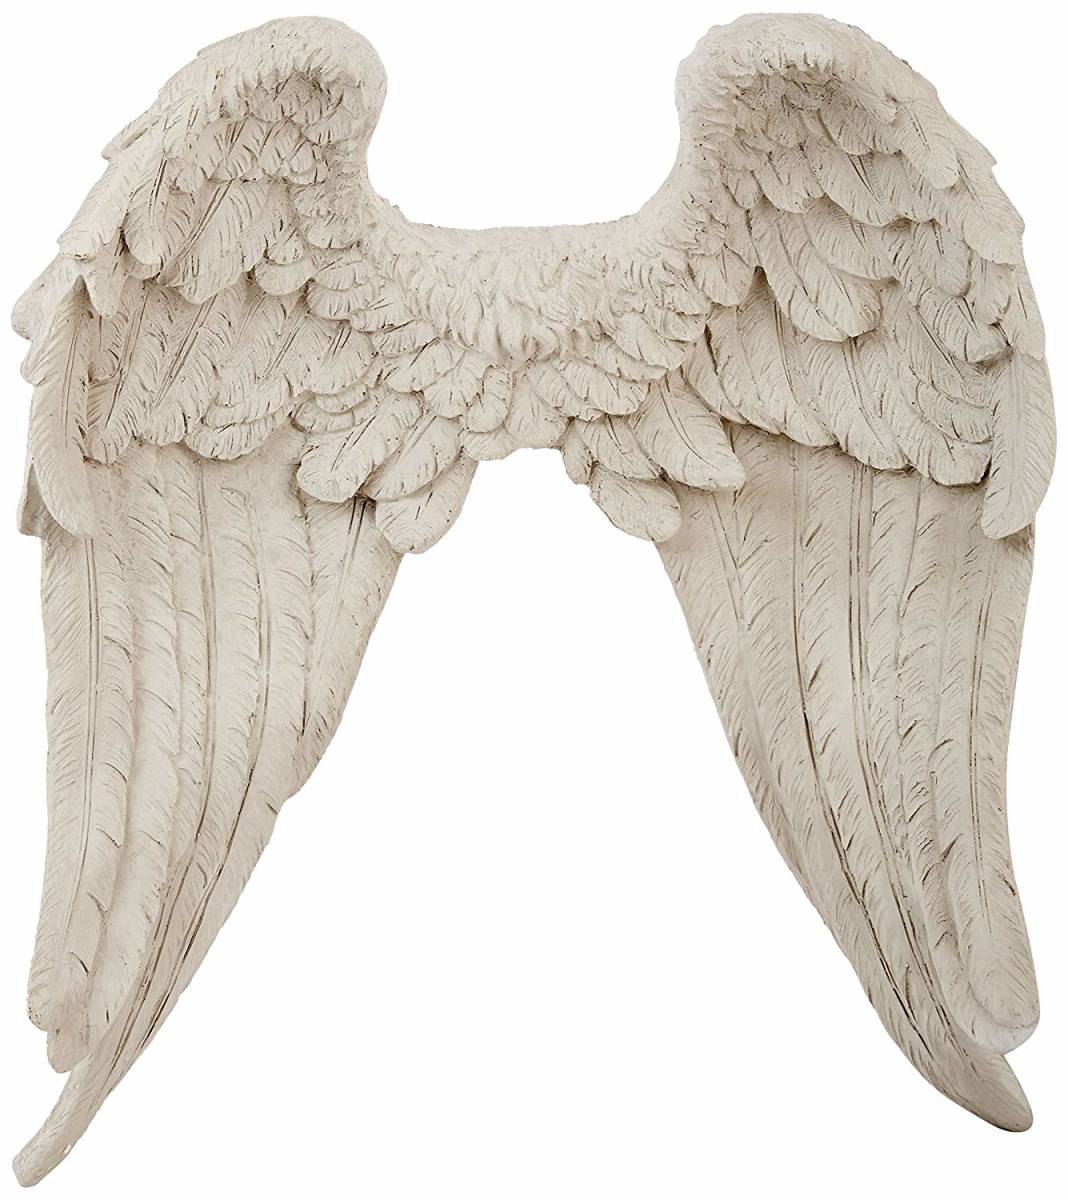 新品通販】 エンジェル 天使の翼 壁掛け装飾 インテリア彫像 彫刻